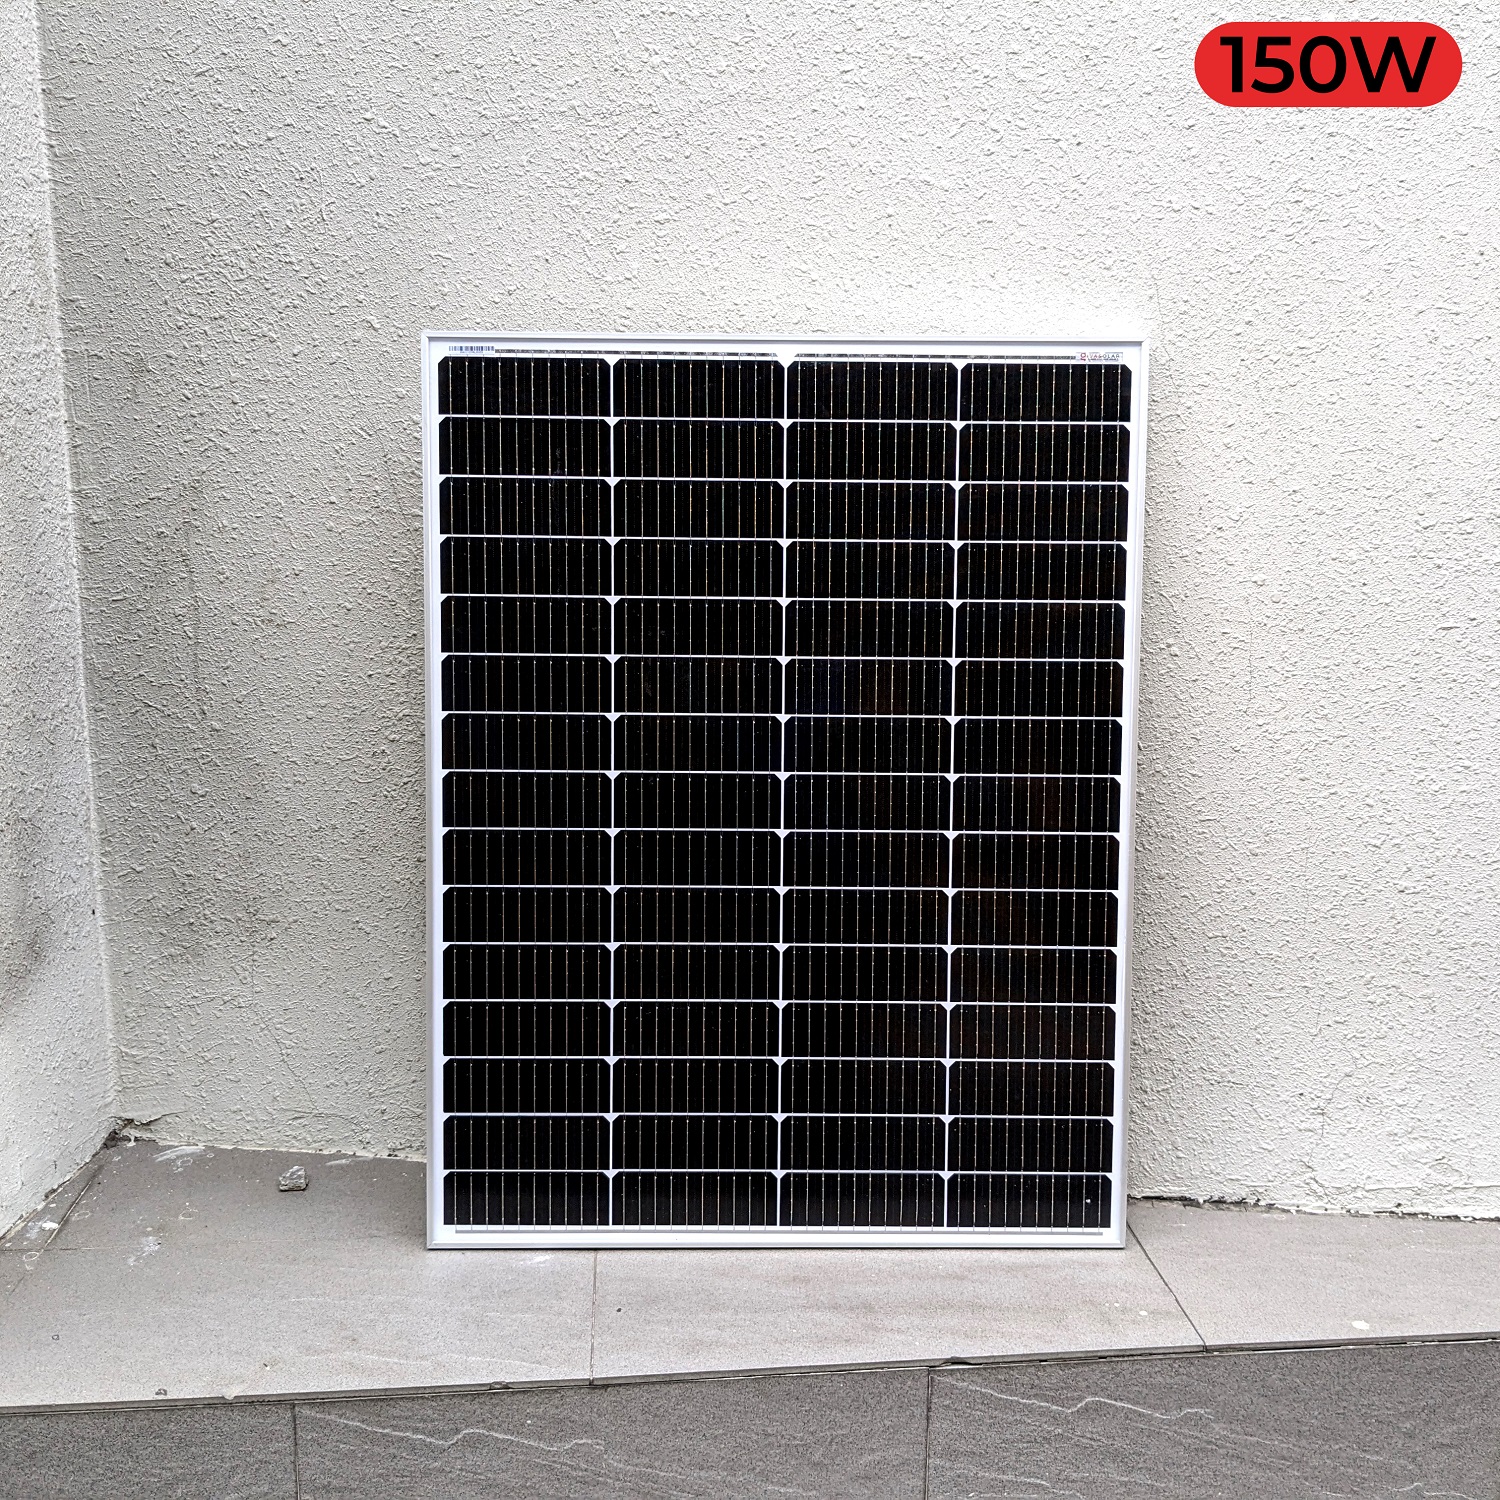 Tấm pin thu năng lượng mặt trời GIVASOLAR MONO MSP-150W